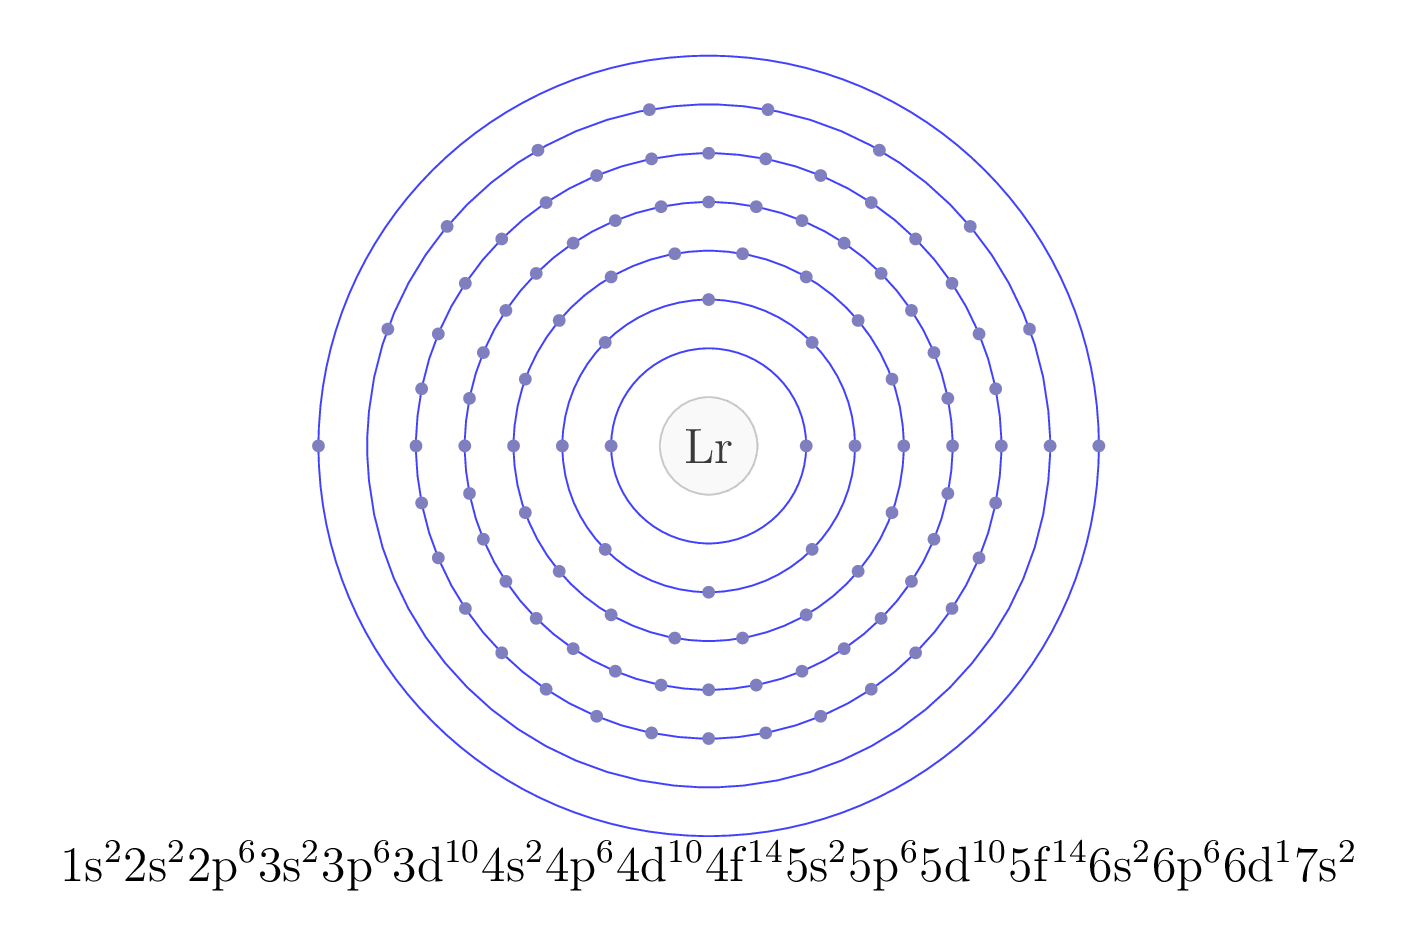 electron configuration of element Lr